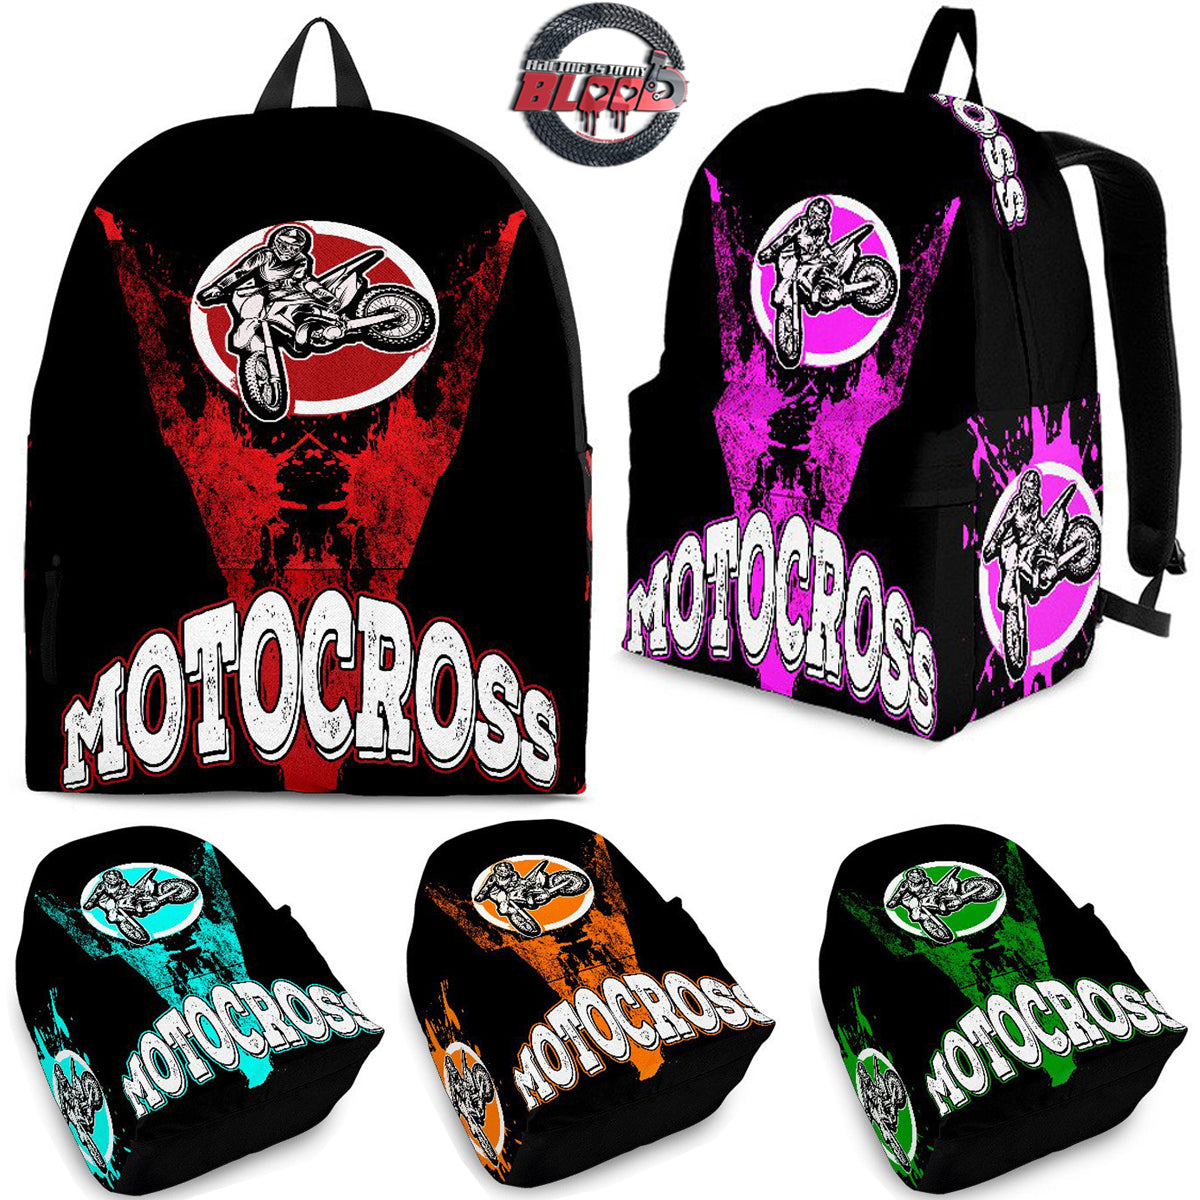 Motocross Backpacks